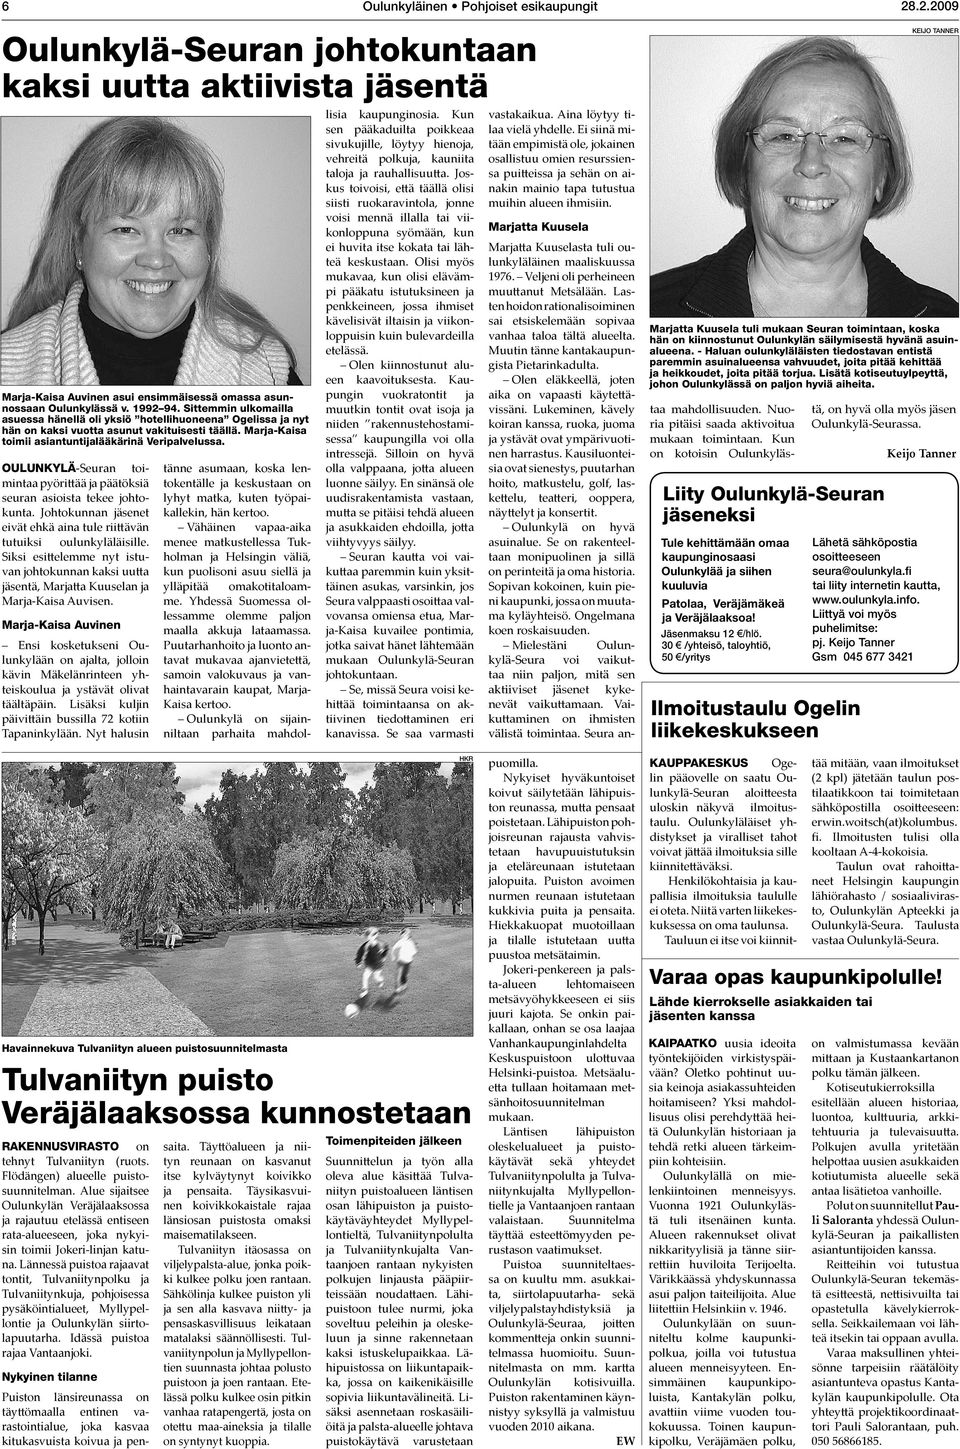 Oulunkylä-Seuran toimintaa pyörittää ja päätöksiä seuran asioista tekee johtokunta. Johtokunnan jäsenet eivät ehkä aina tule riittävän tutuiksi oulunkyläläisille.